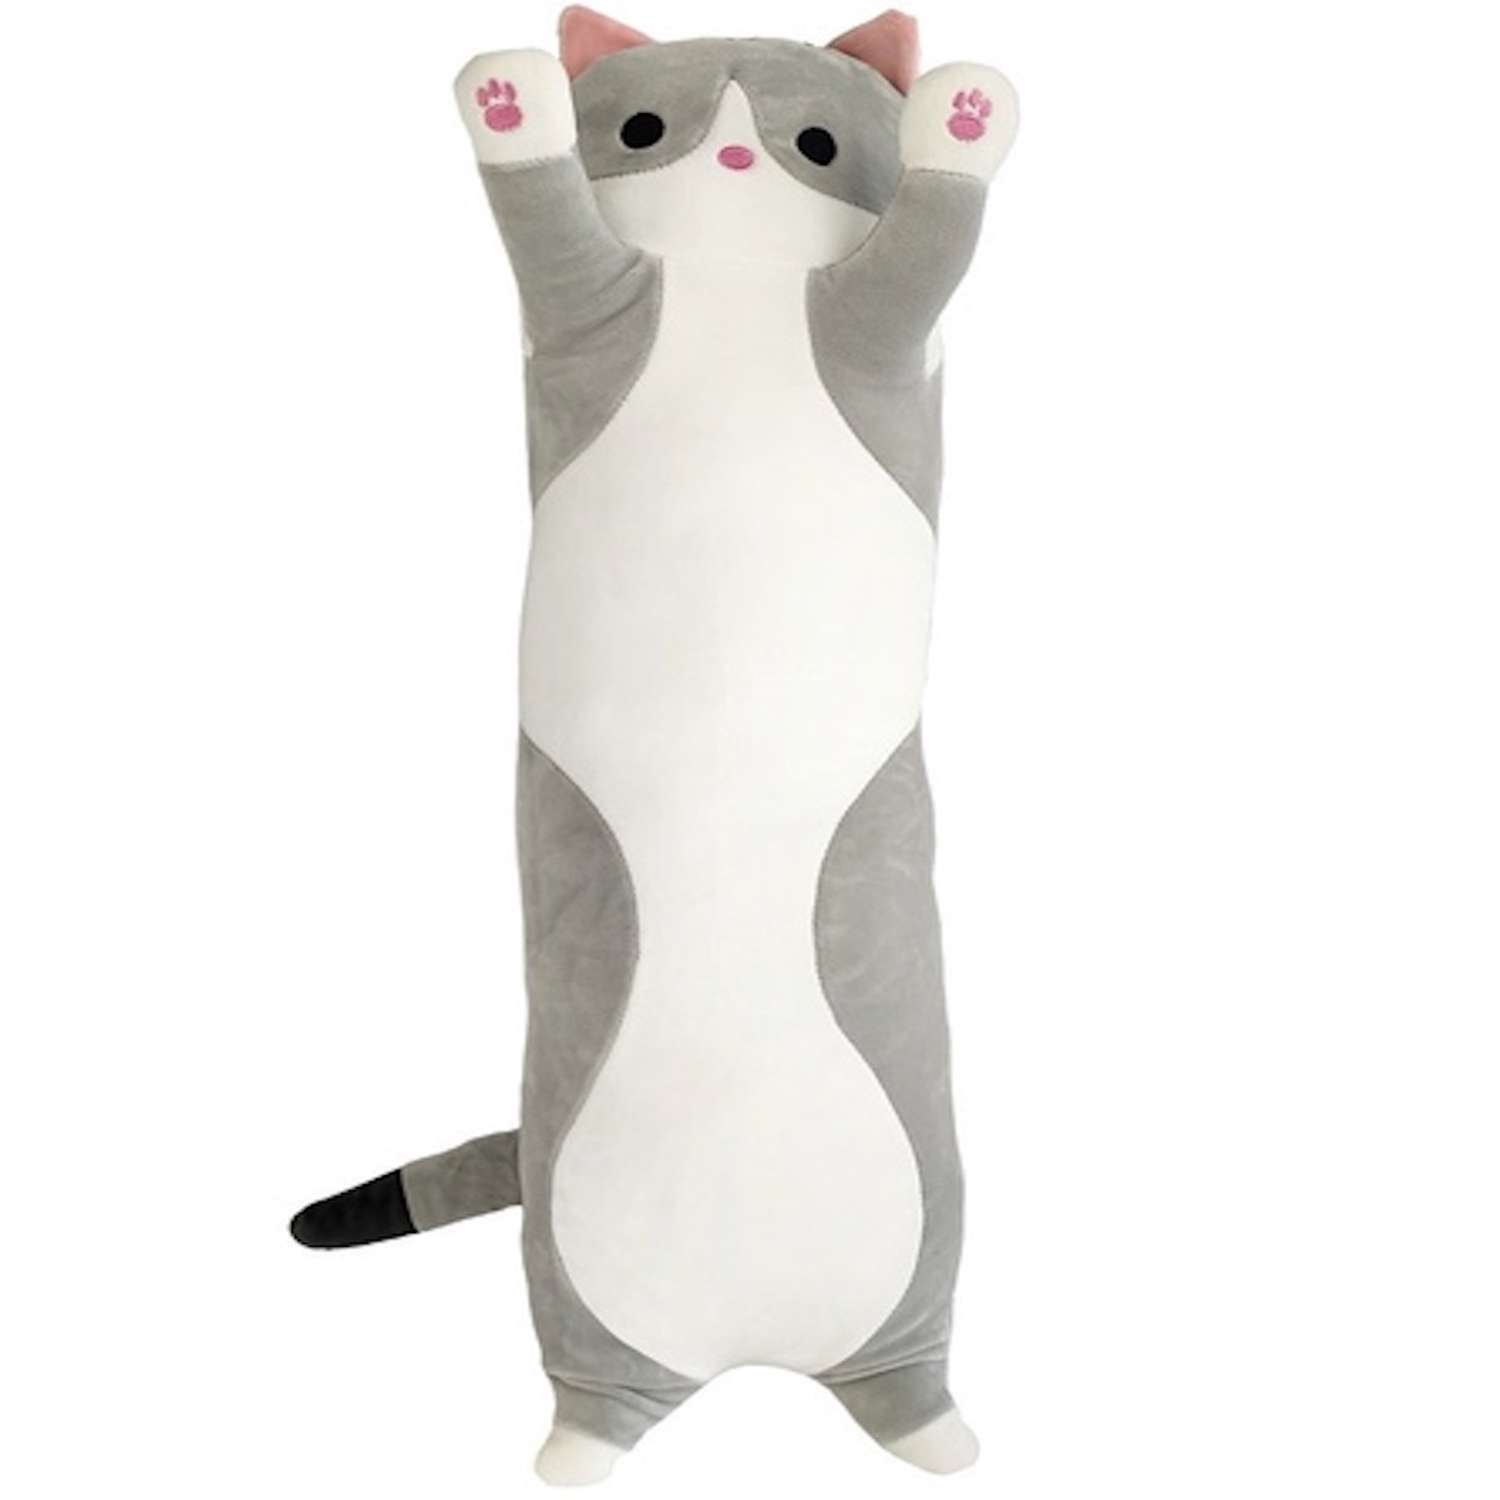 Кошка мягкая длинная. Кот батон 130 см. Кот батон серый 110 см. Игрушка кот батон 110 см. Мягкая игрушка кот батон игрушка обнимашка 110 см серый.